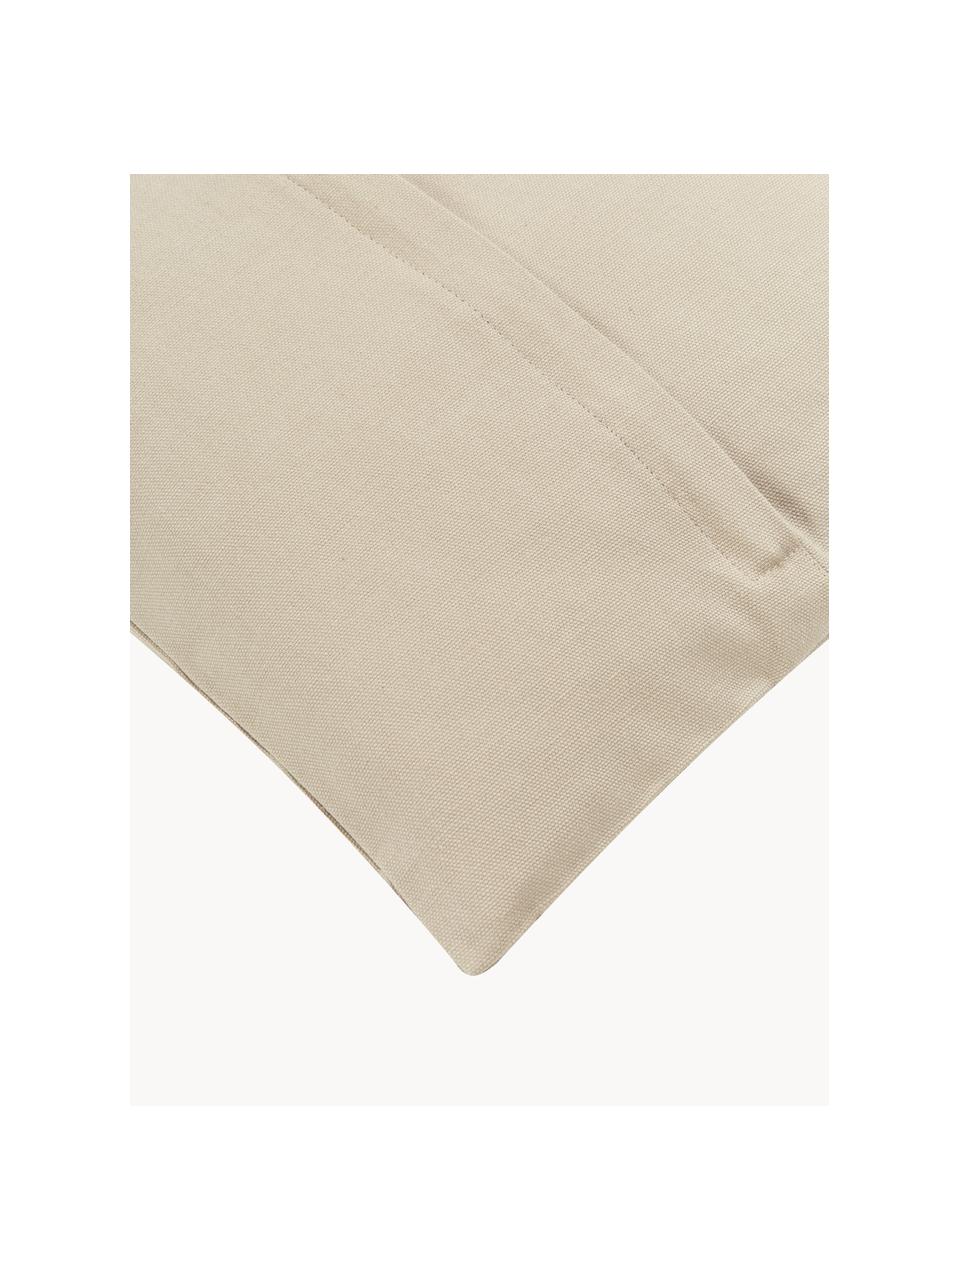 Poszewka na poduszkę z haftem Snowflake, 100% bawełna, Beżowy, kremowobiały, S 45 x D 45 cm